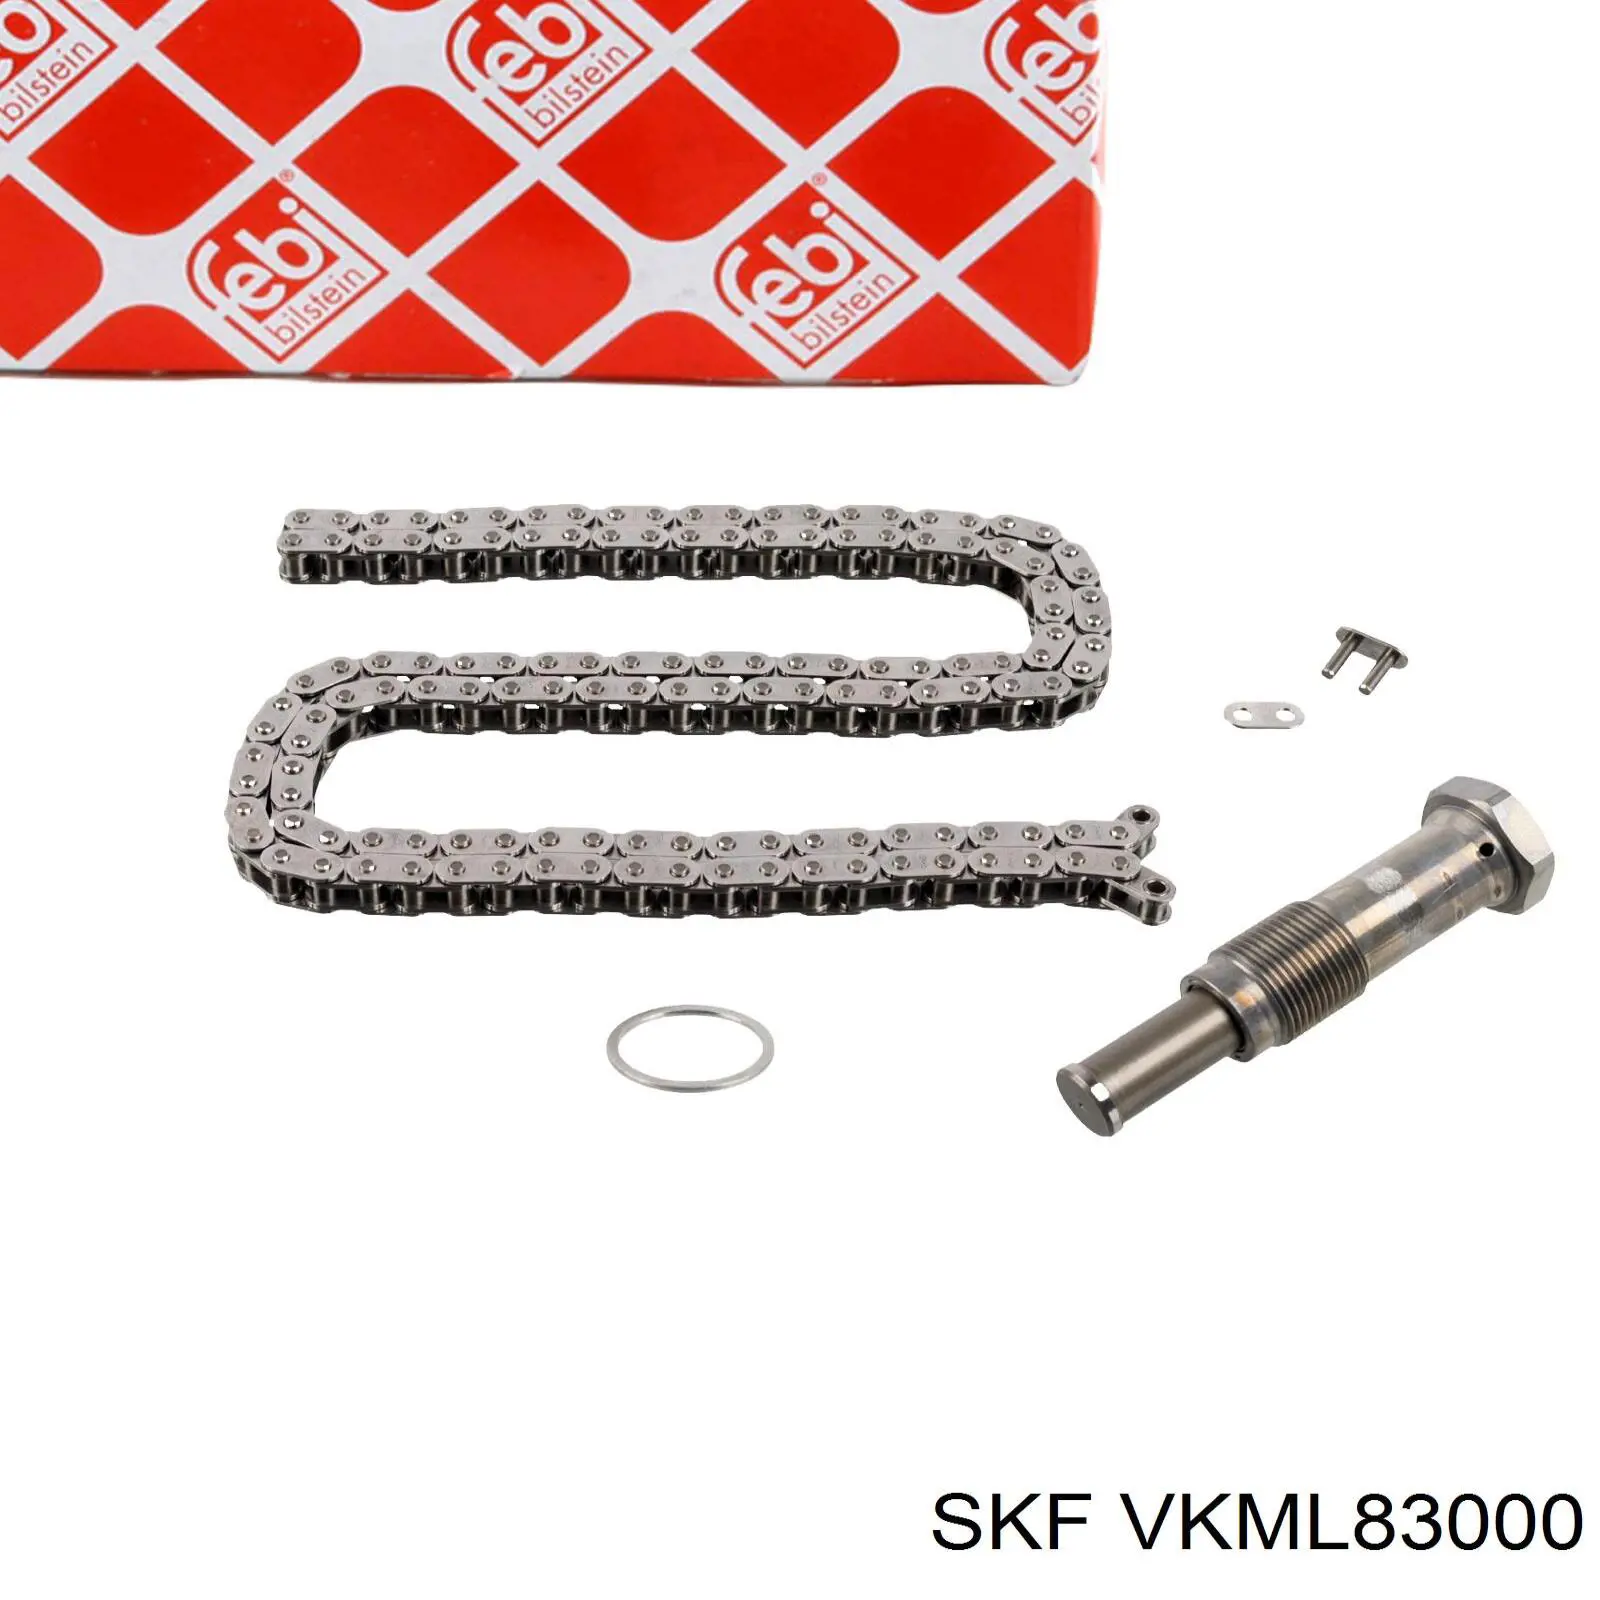 VKML 83000 SKF kit de cadenas de distribución